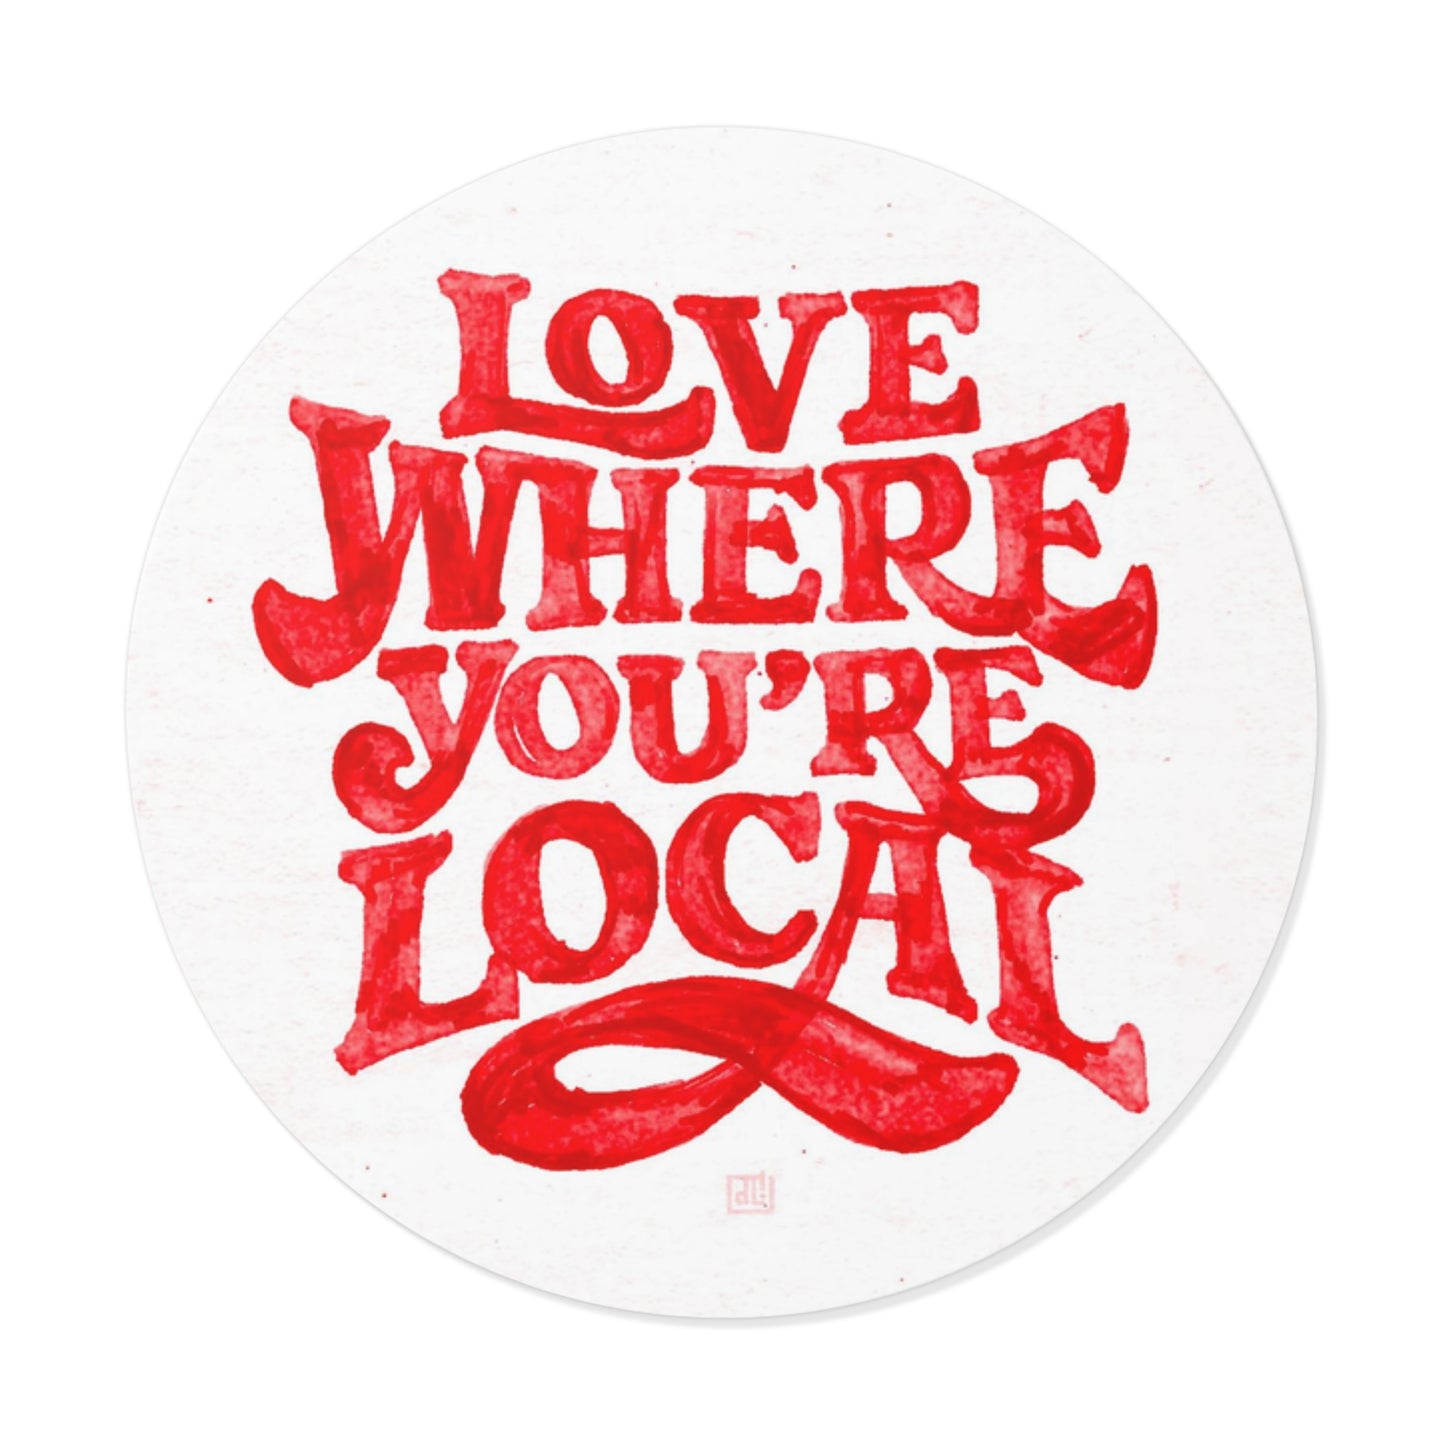 Love Where You're Local Sticker